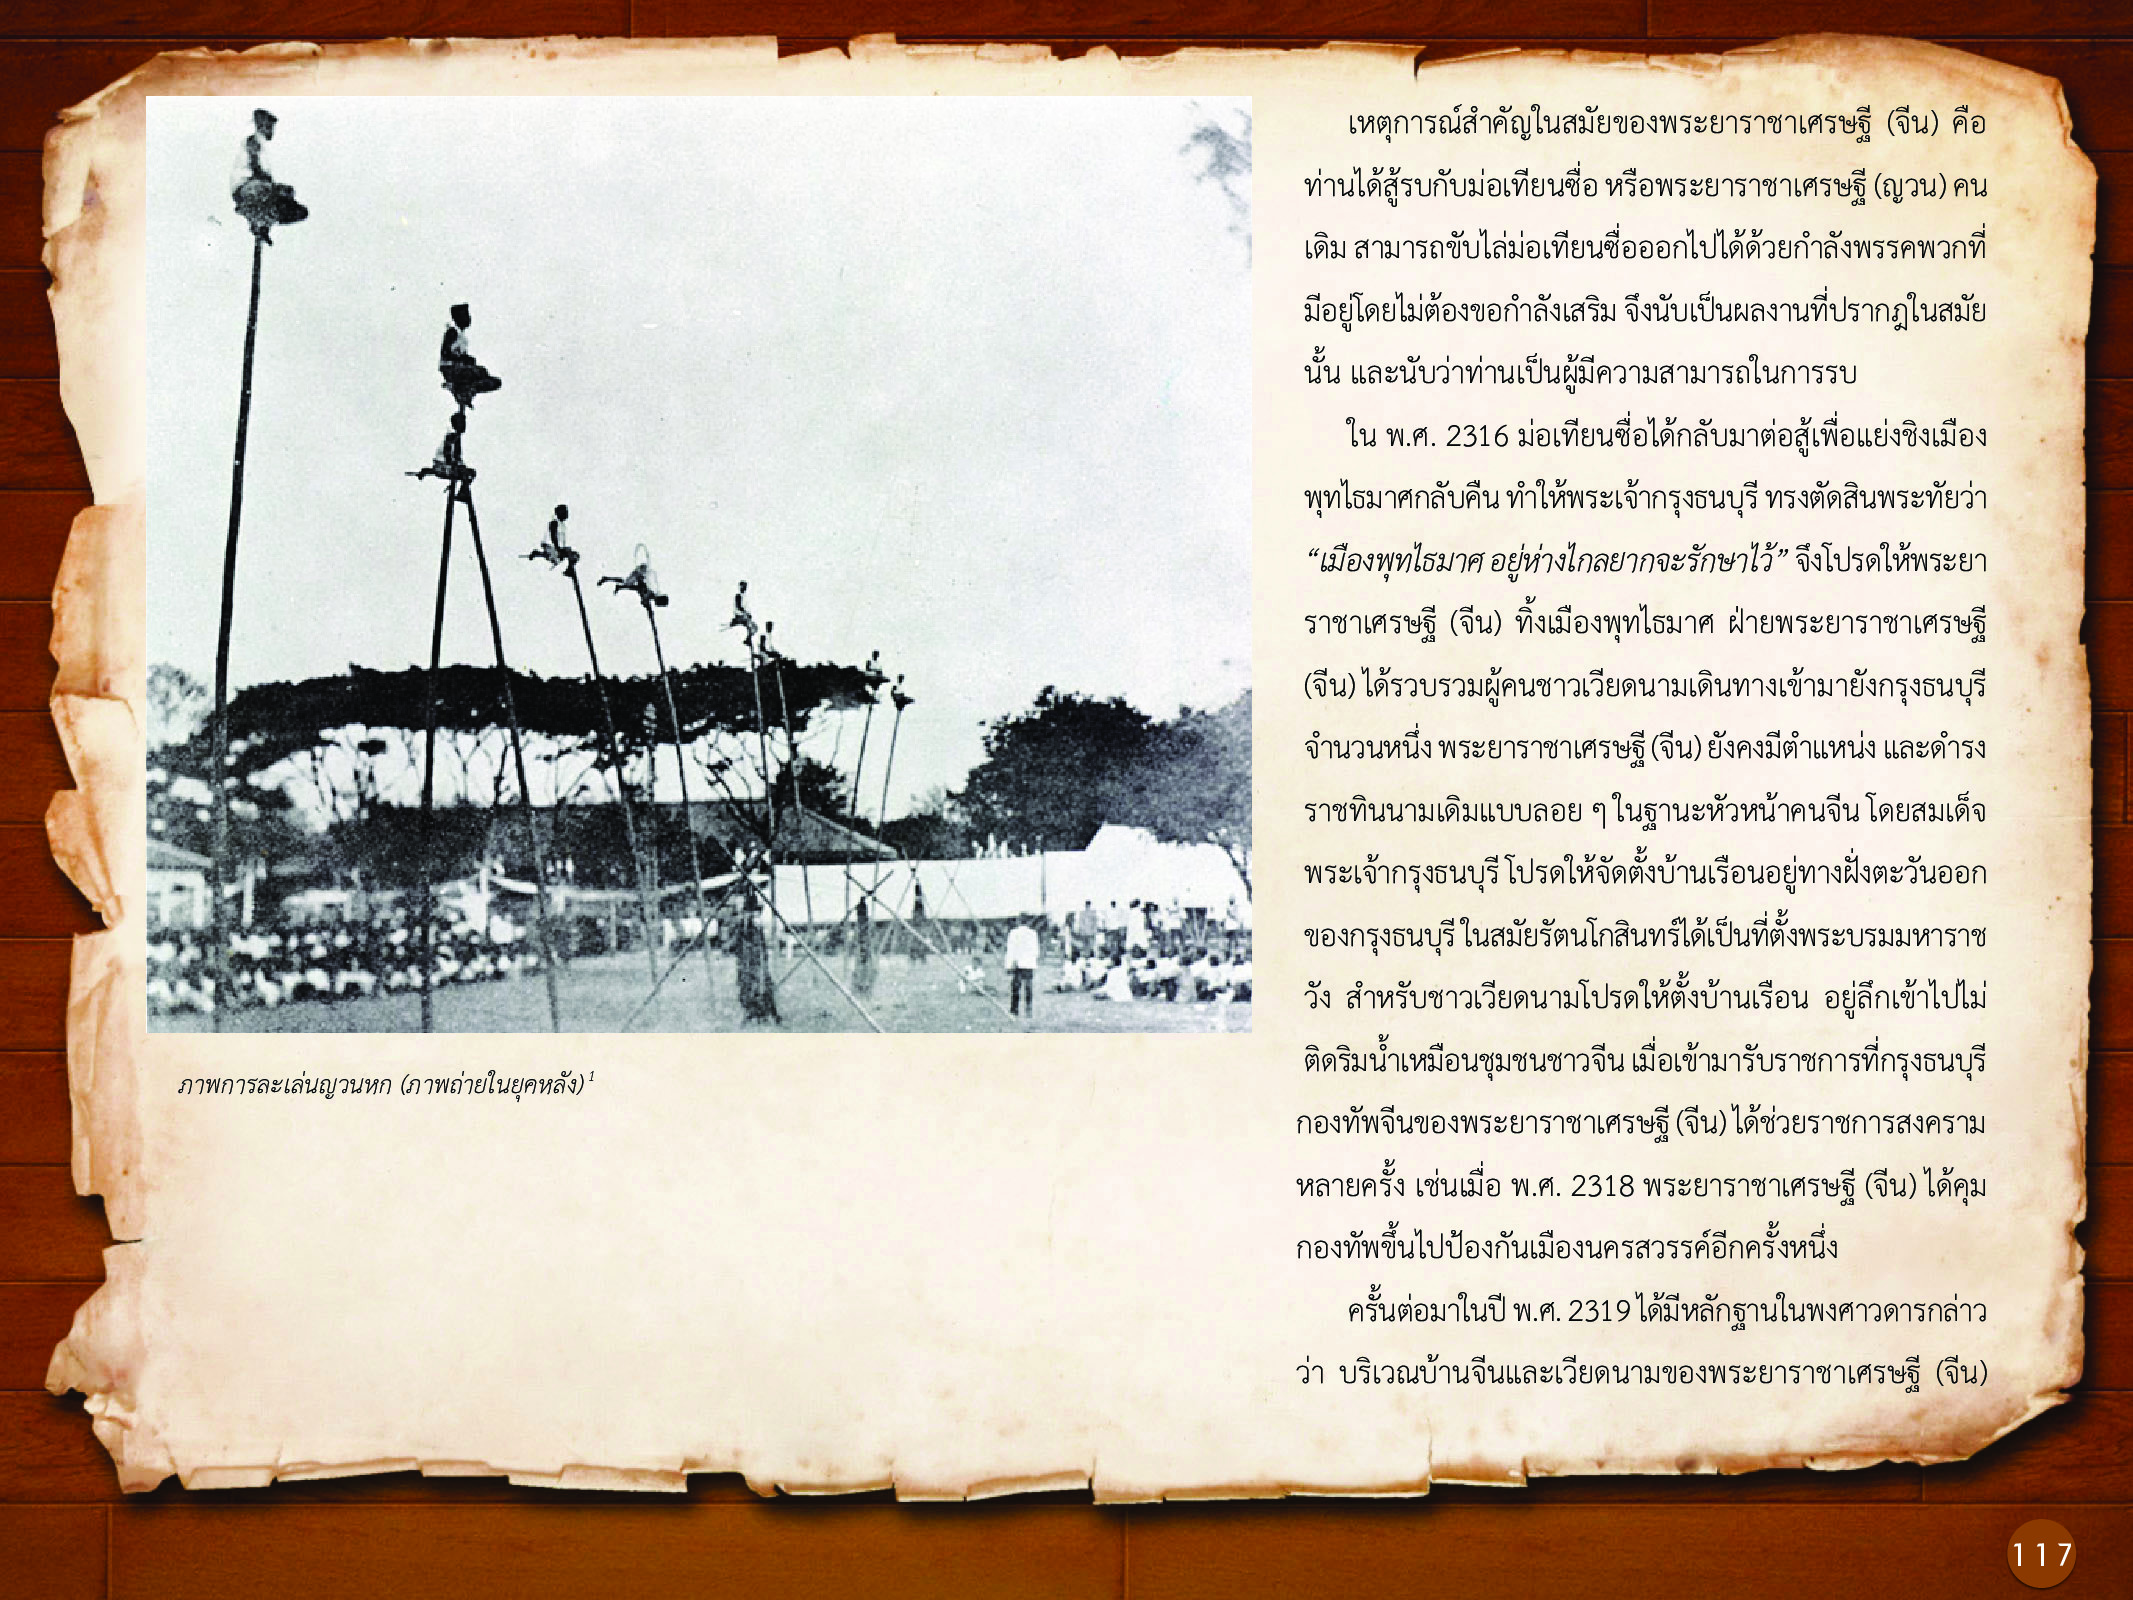 ประวัติศาสตร์กรุงธนบุรี ./images/history_dhonburi/117.jpg